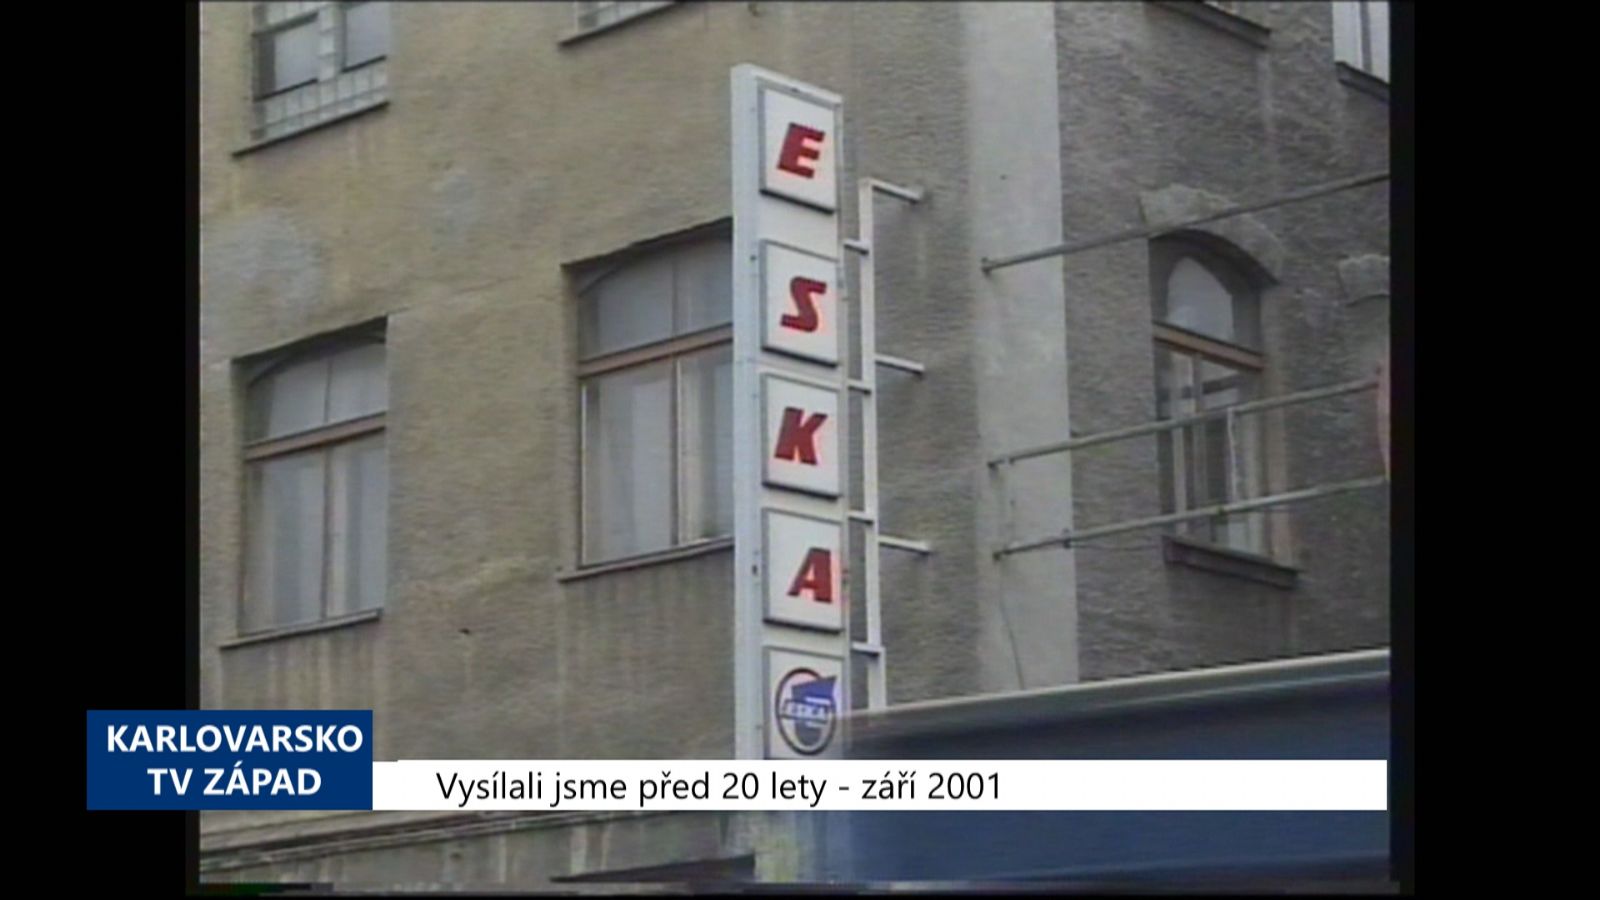 2001 – Cheb: Chátrající ESKA bude rozprodána po částech (TV Západ)